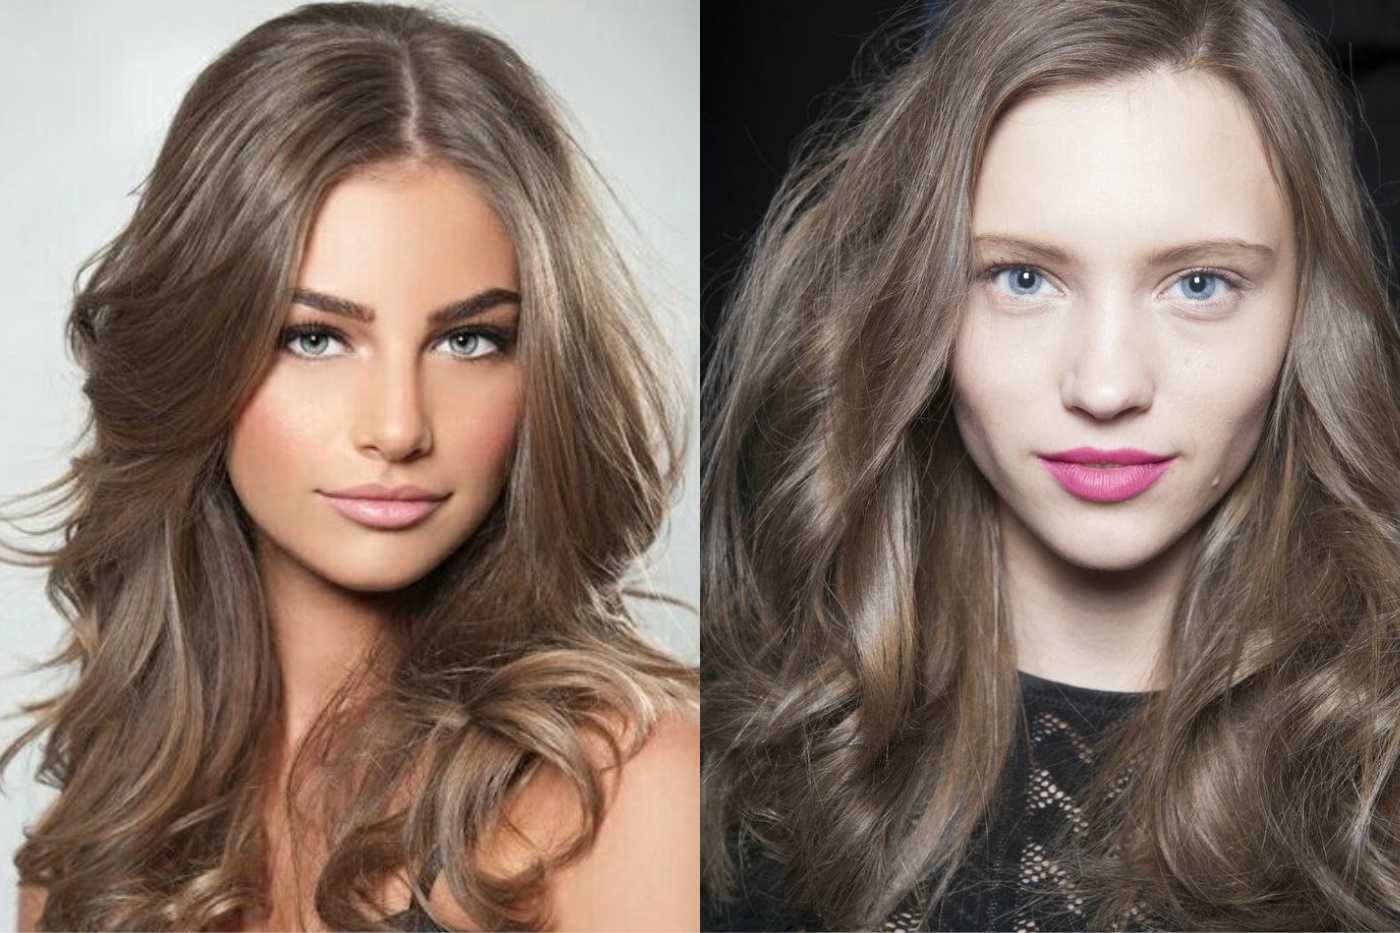 Средне-русый цвет волос. фото до и после окрашивания, краски для мелирования, палитра